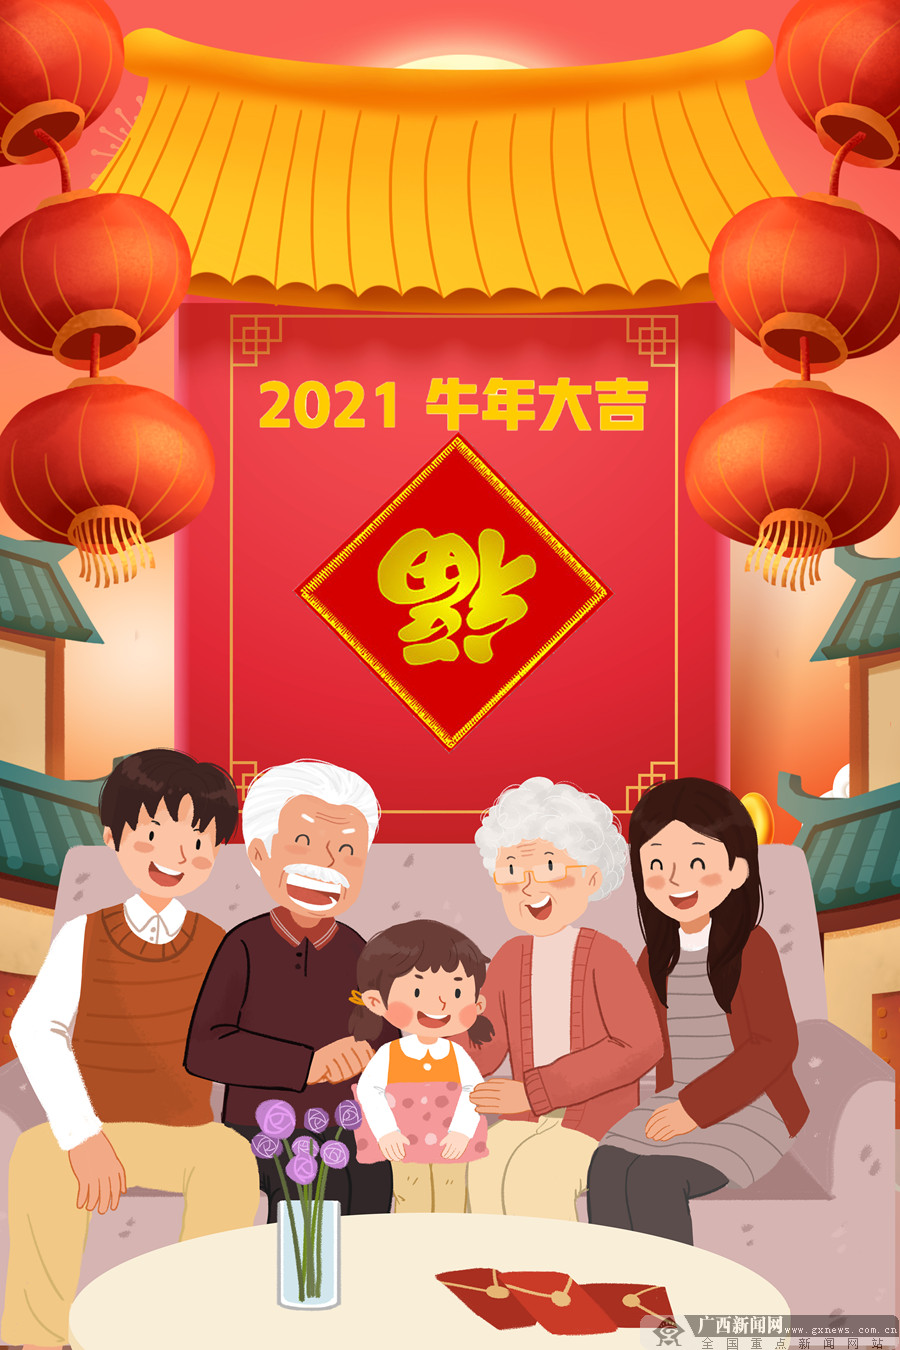 【网络中国节·春节】用奋斗的每一天织就新年的新画卷